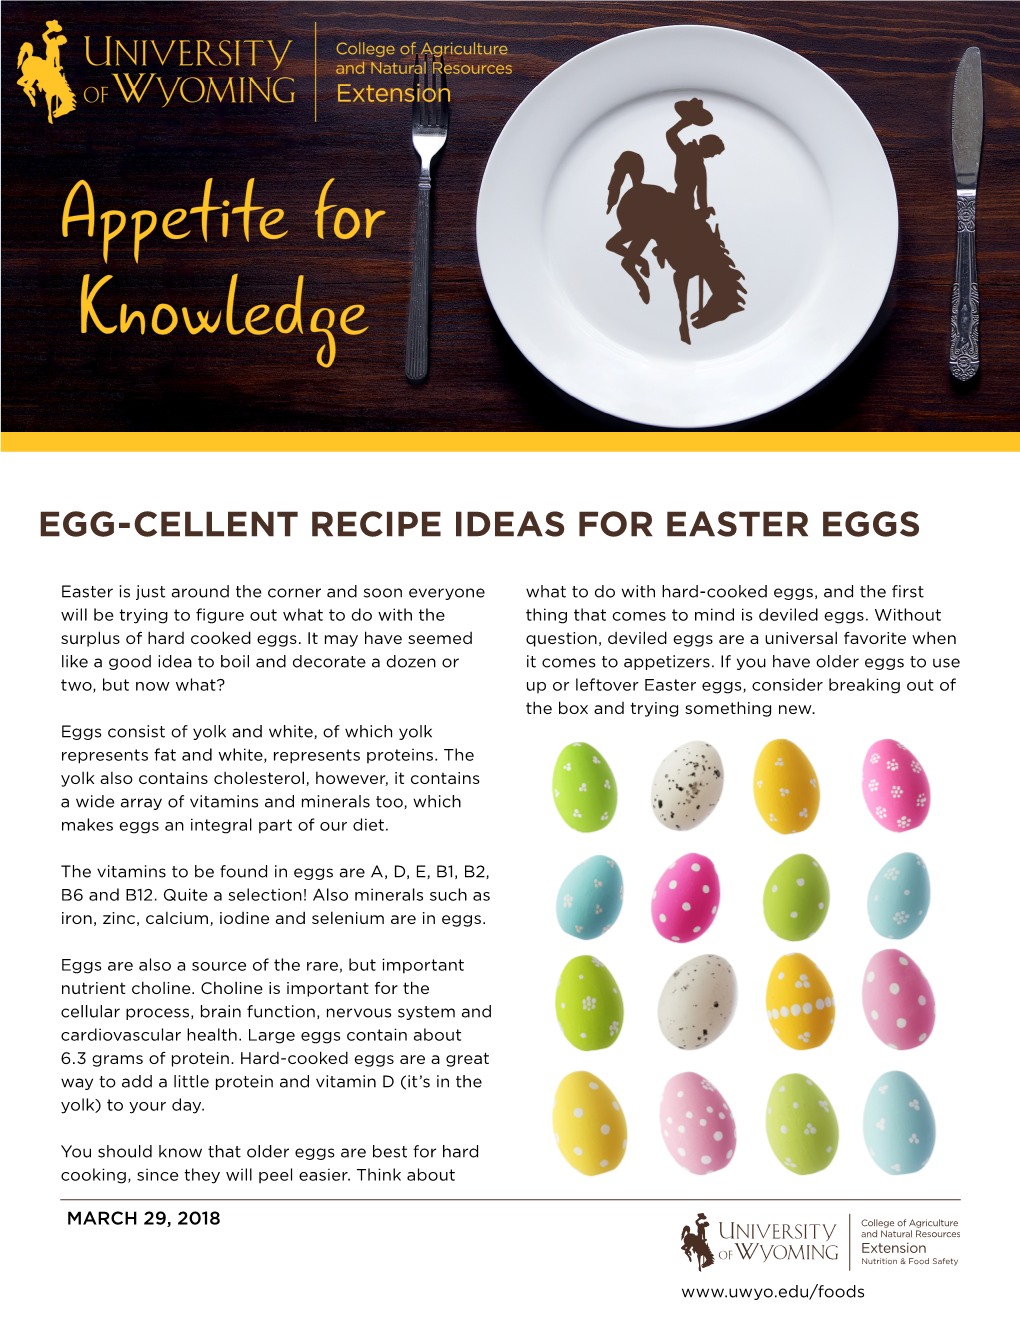 Egg-Cellent Recipe Ideas for Easter Eggs